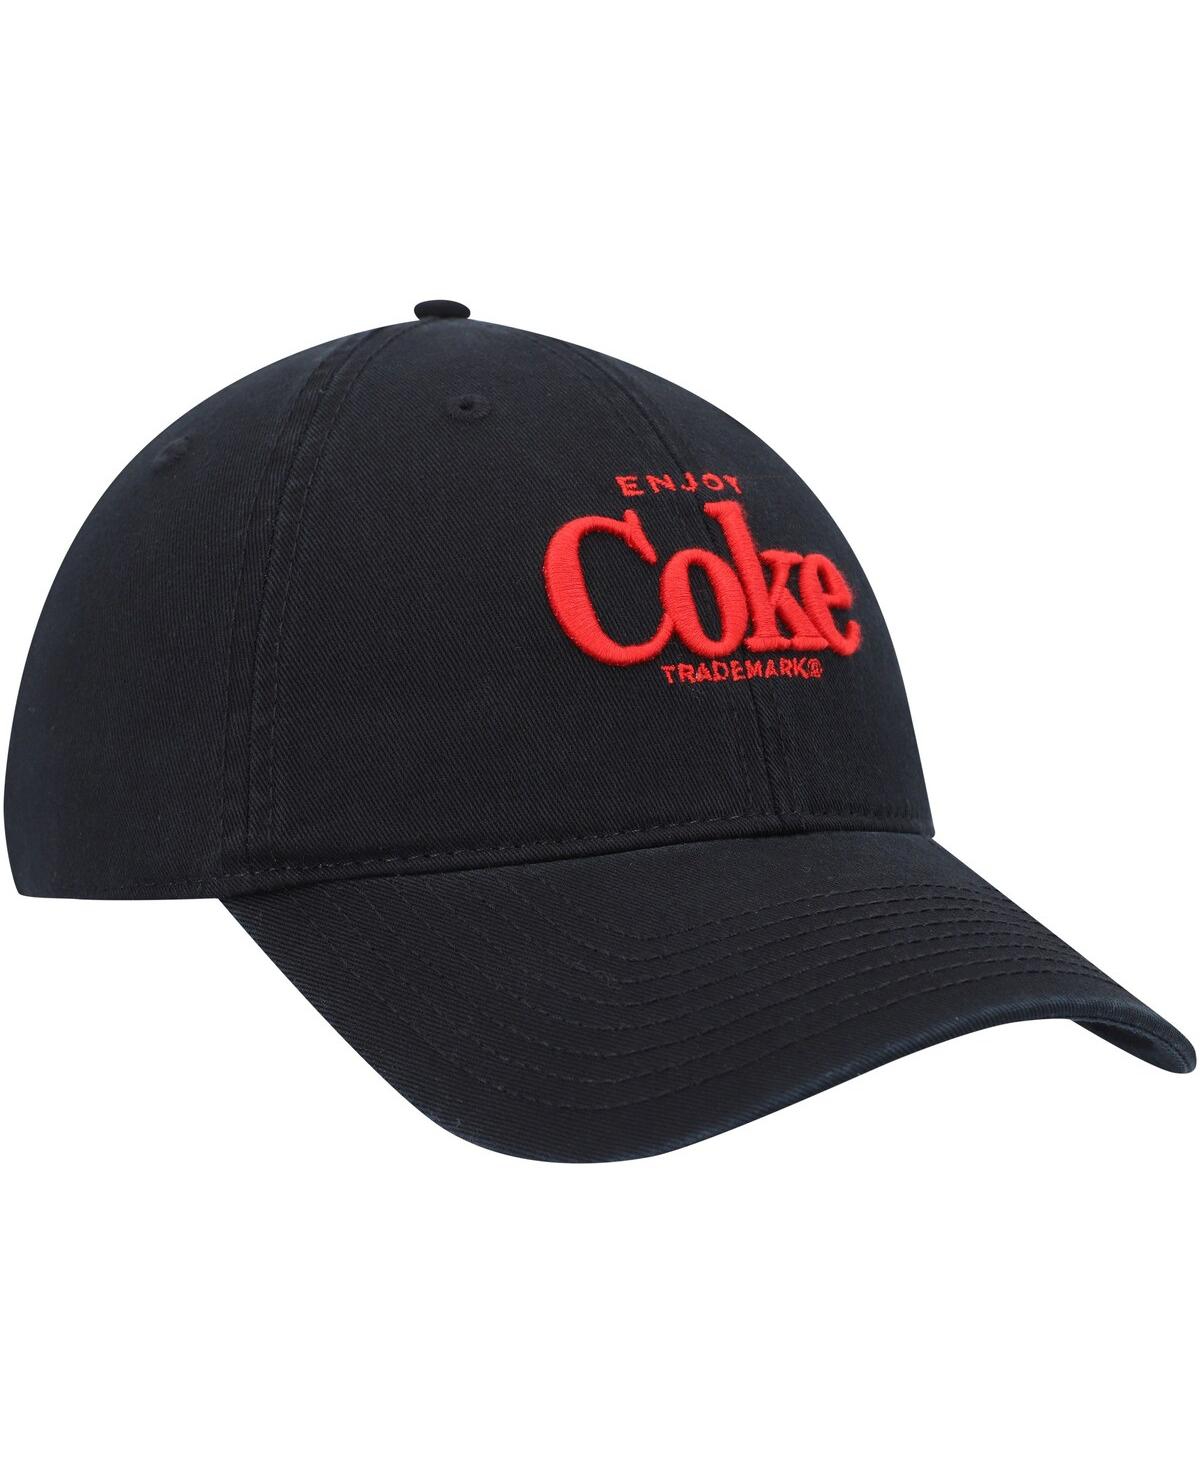 Shop American Needle Men's  Black Coca-cola Ballpark Adjustable Hat